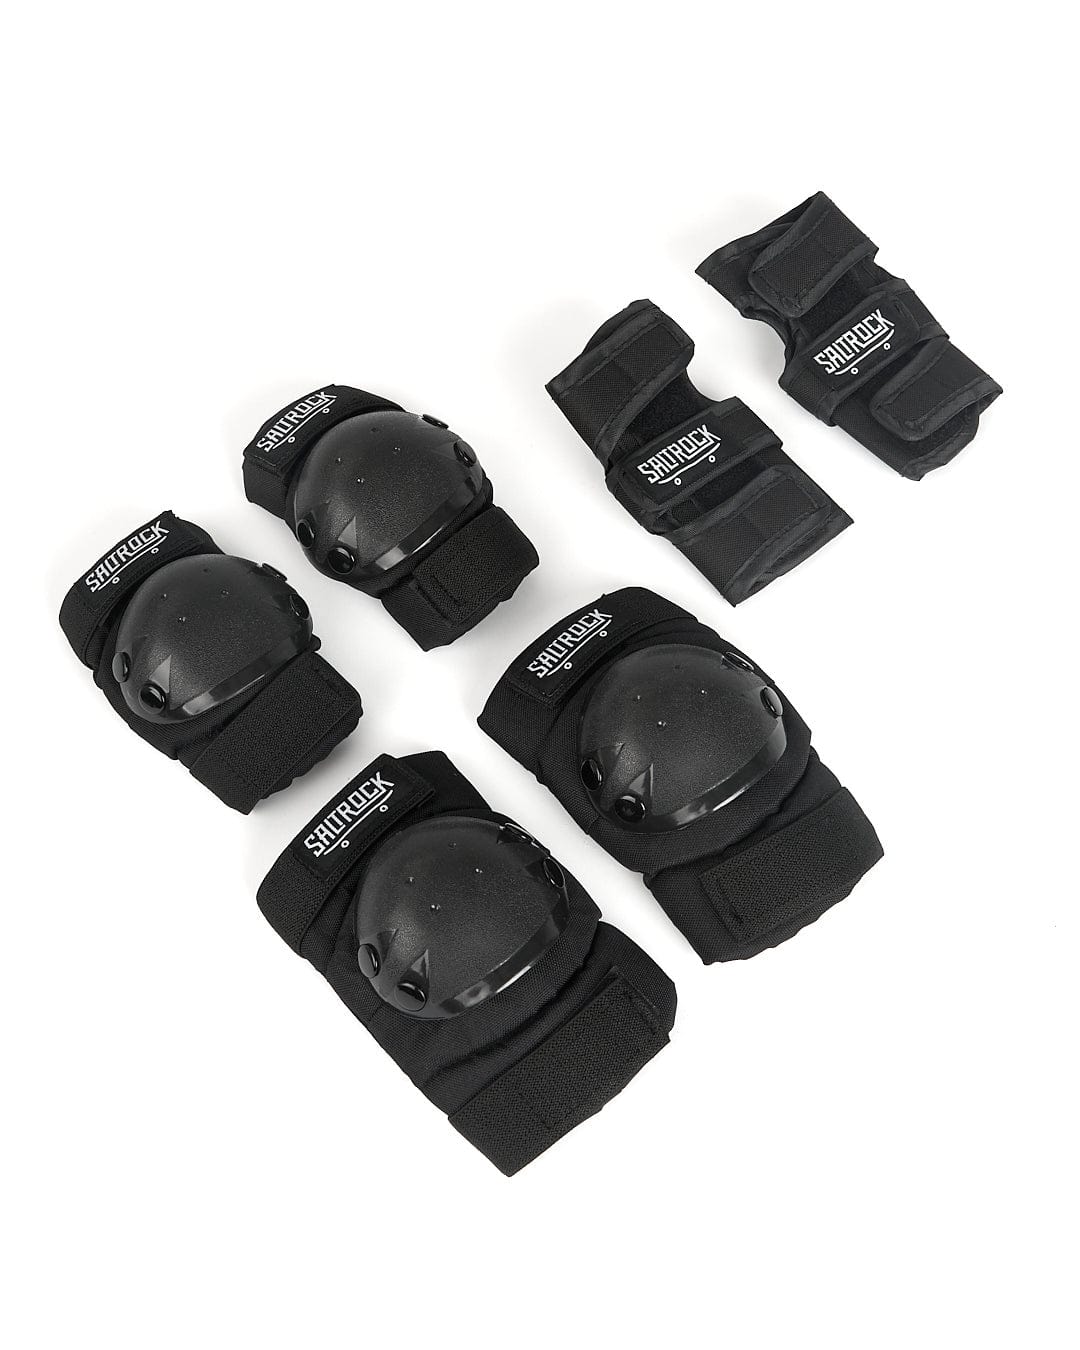 A set of Saltrock Hardskate - Skate Pads - Black and Hardskate - Skate Pads - Black on a white background.